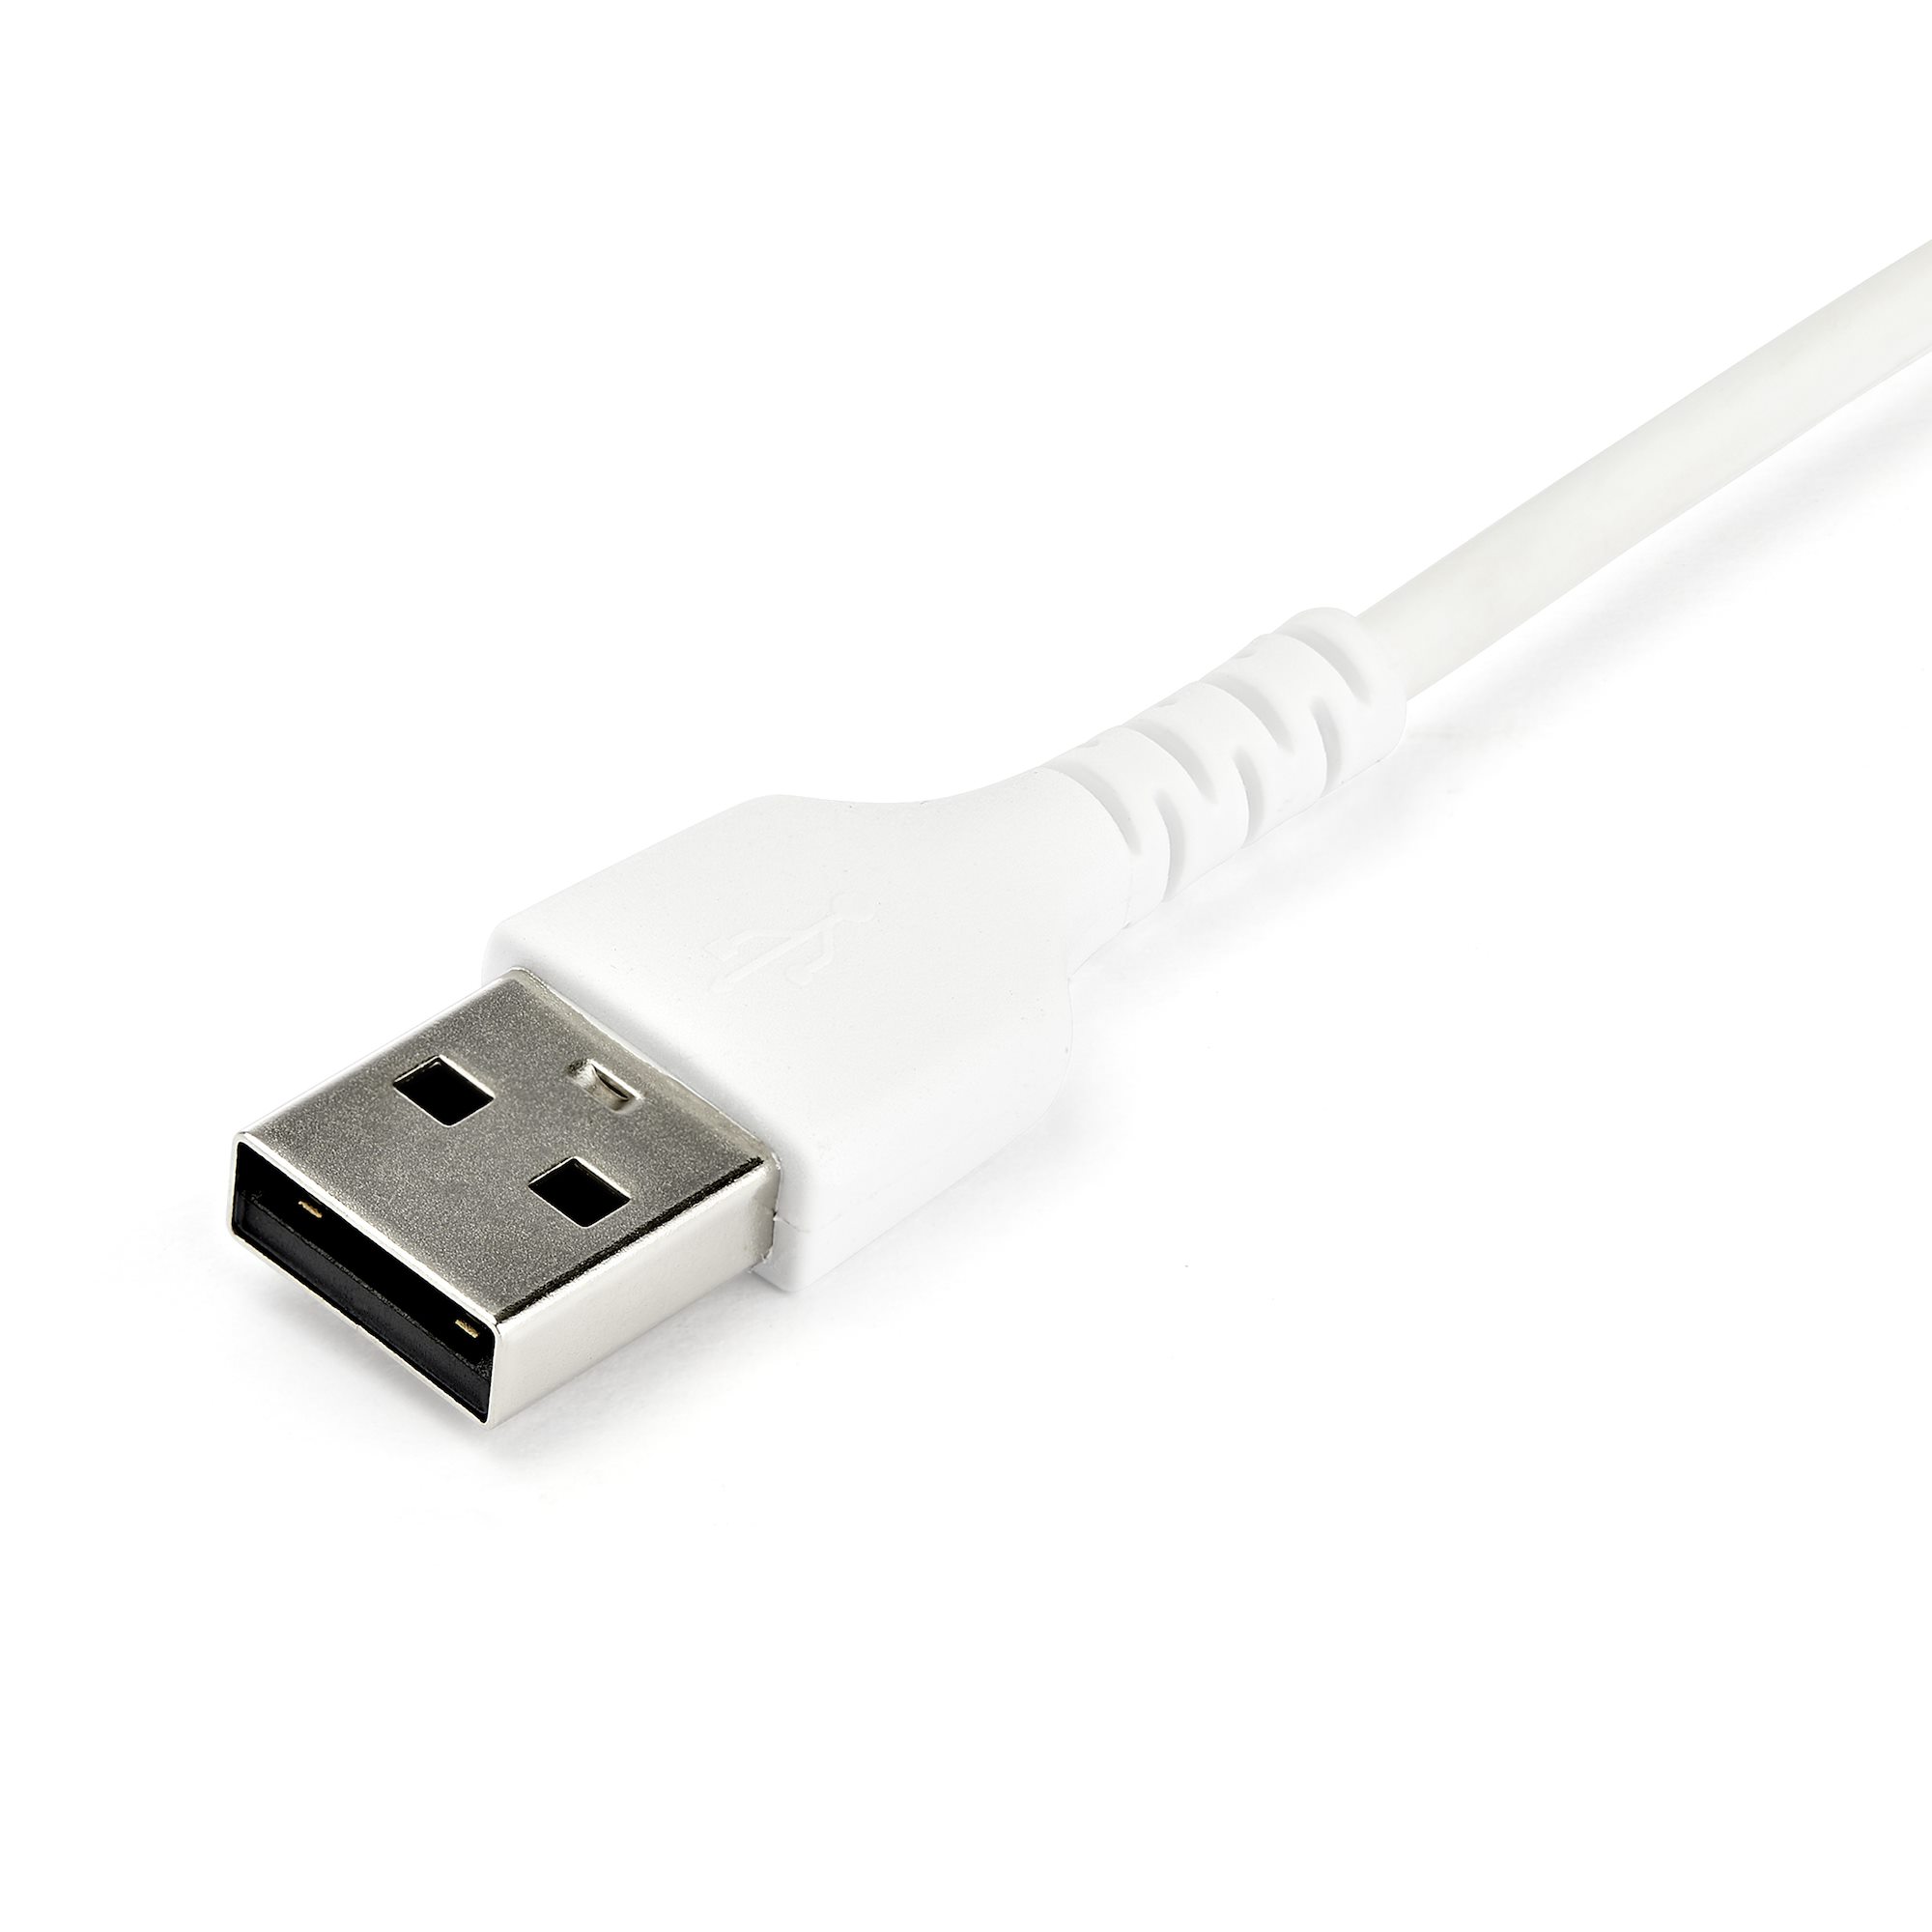 2m USB-A - USB-C ケーブル USB 2.0準拠 ホワイト - USB-Cケーブル